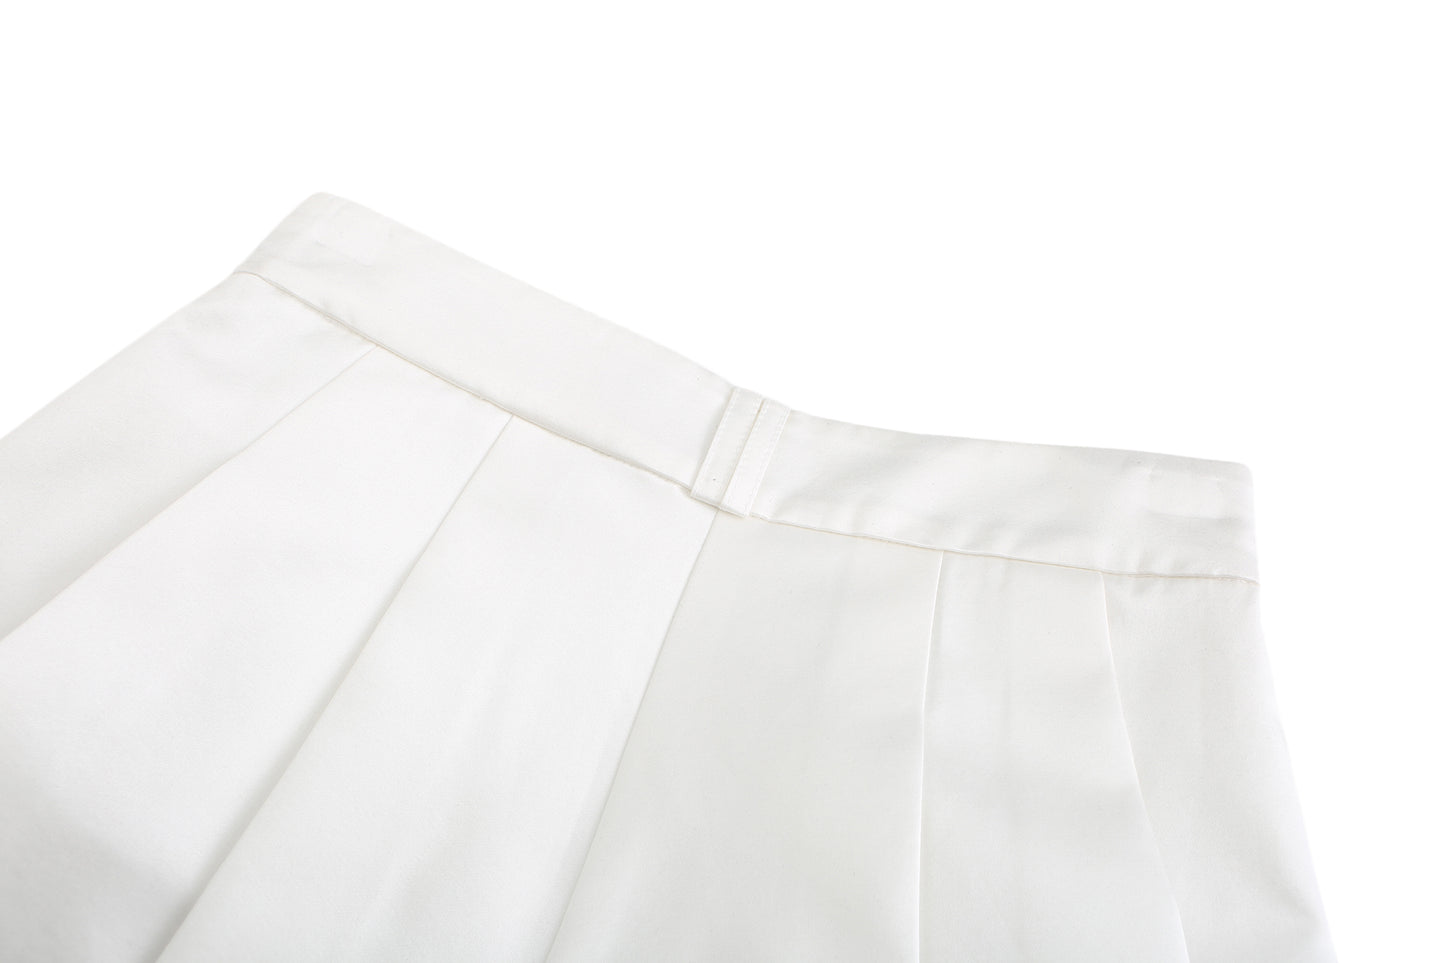 White Milan Shorts